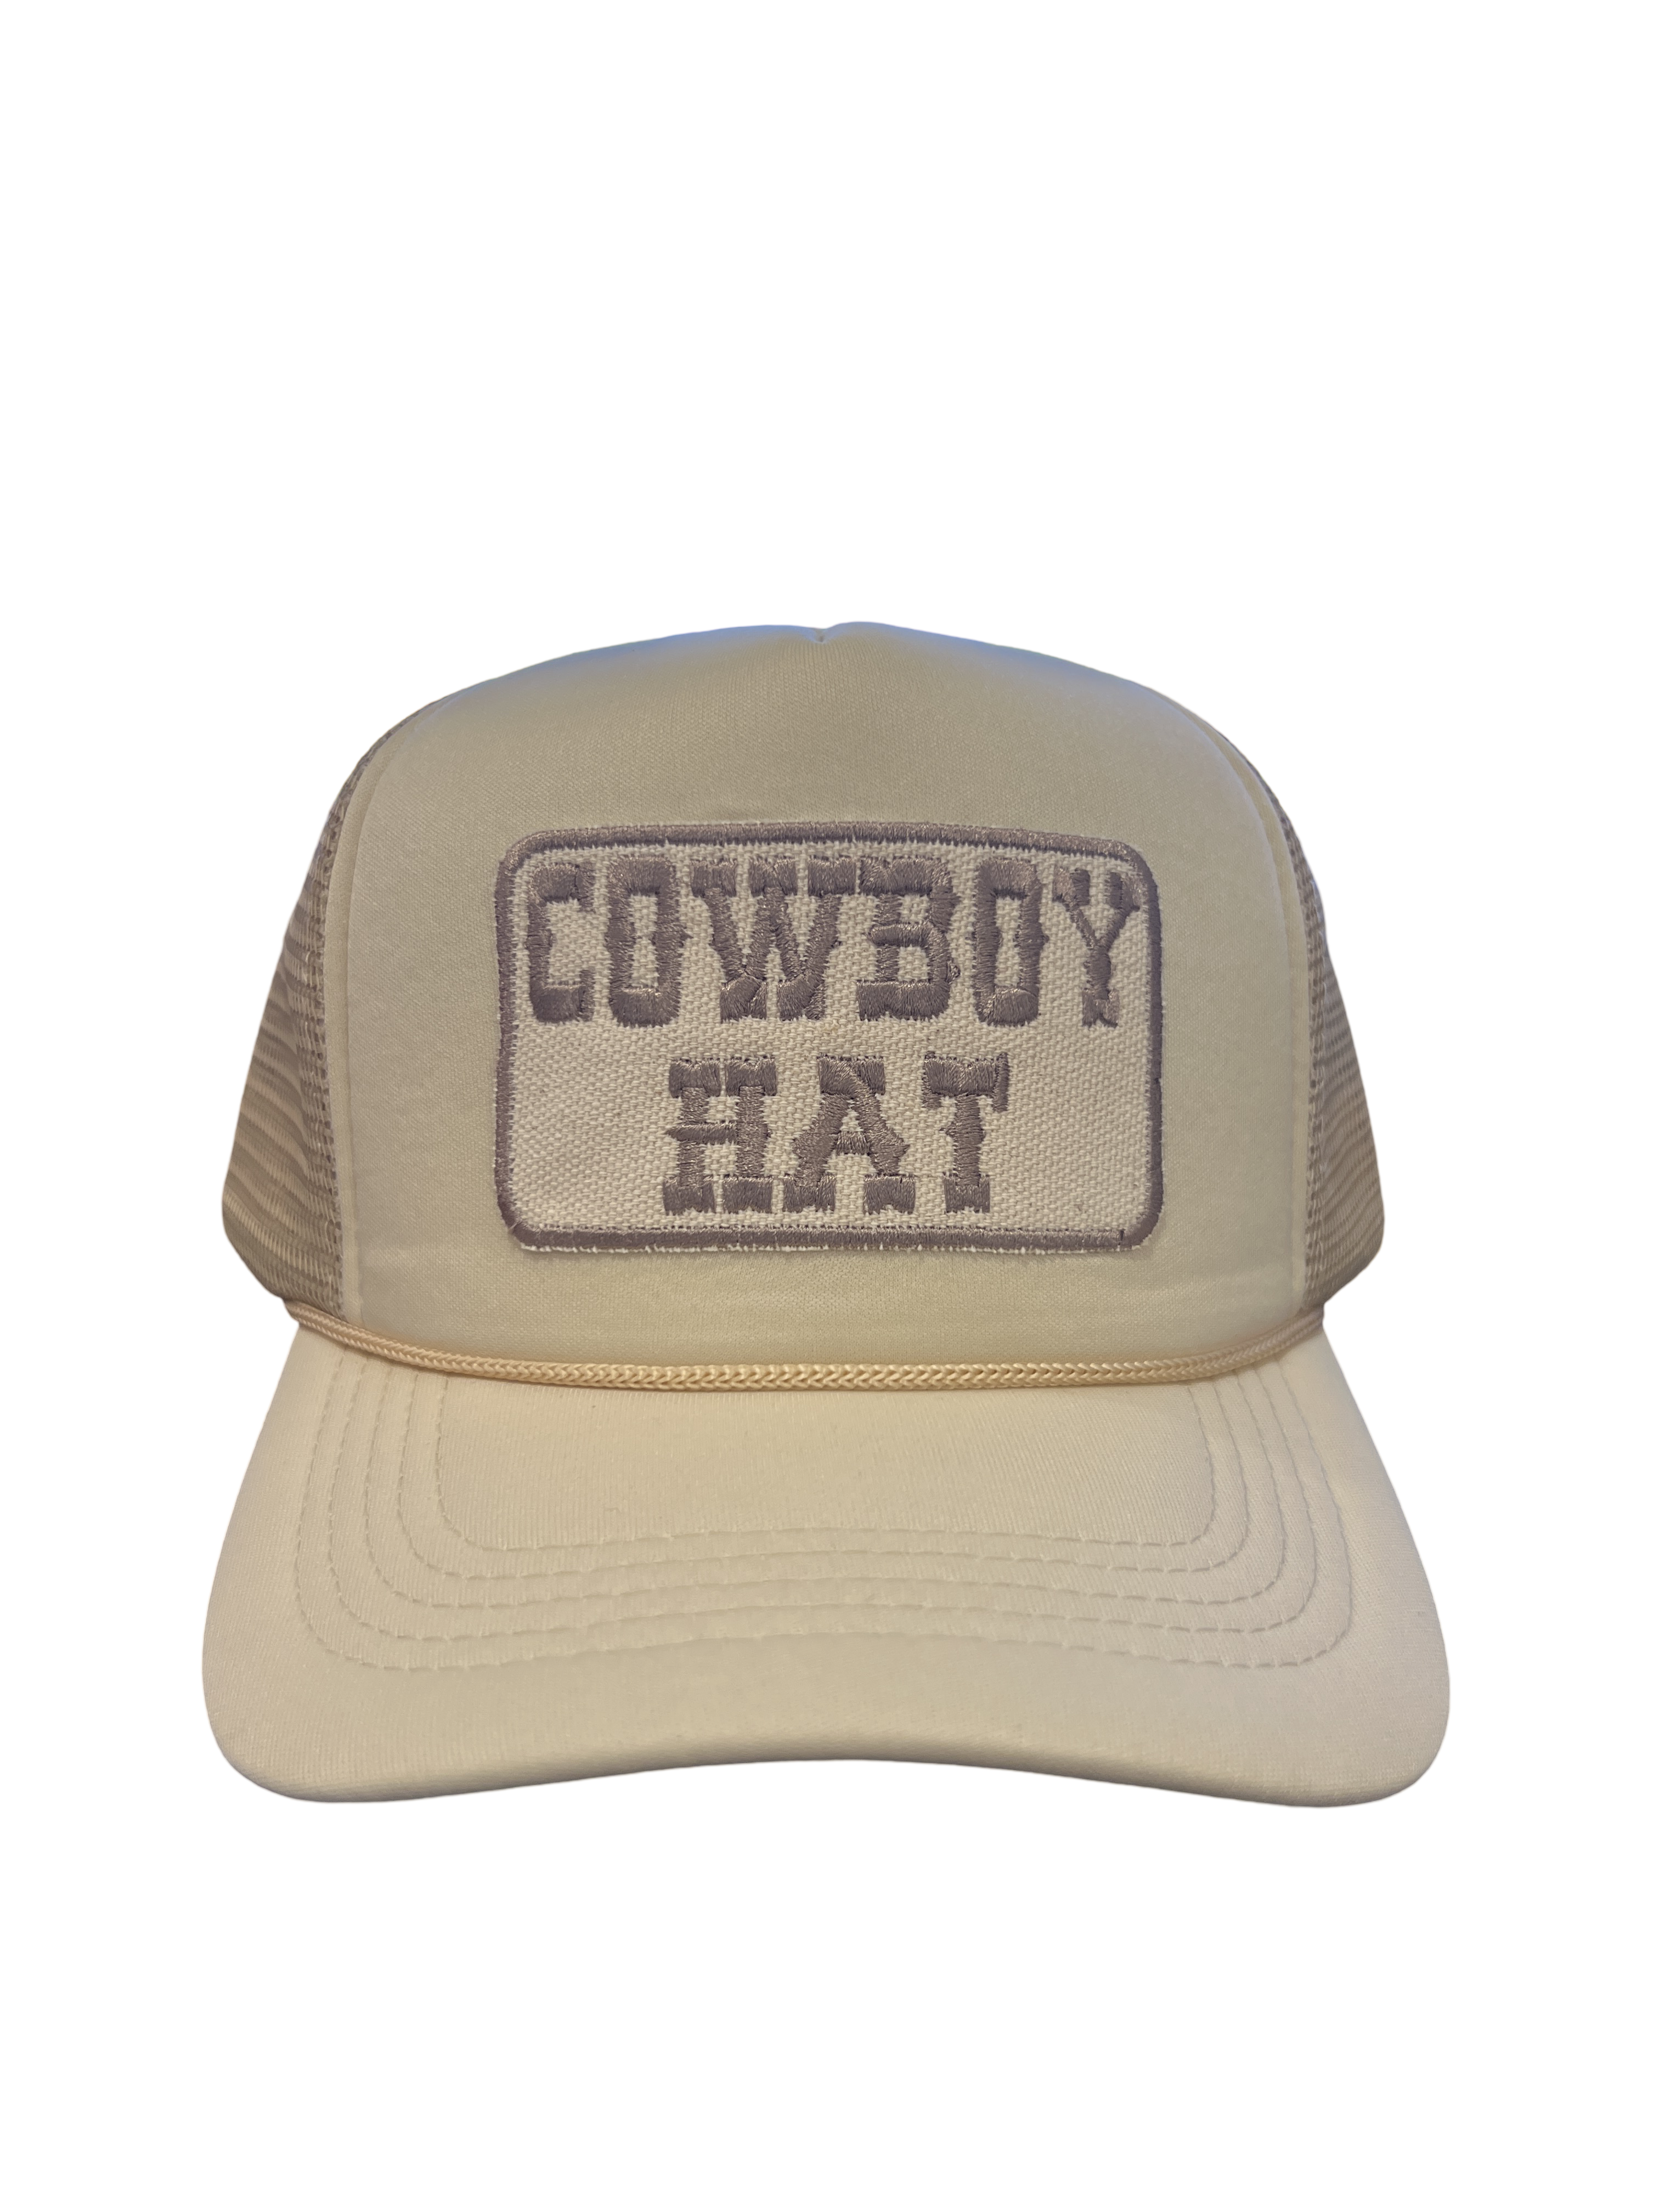 Foam Trucker Hat "Cowboy Hat"